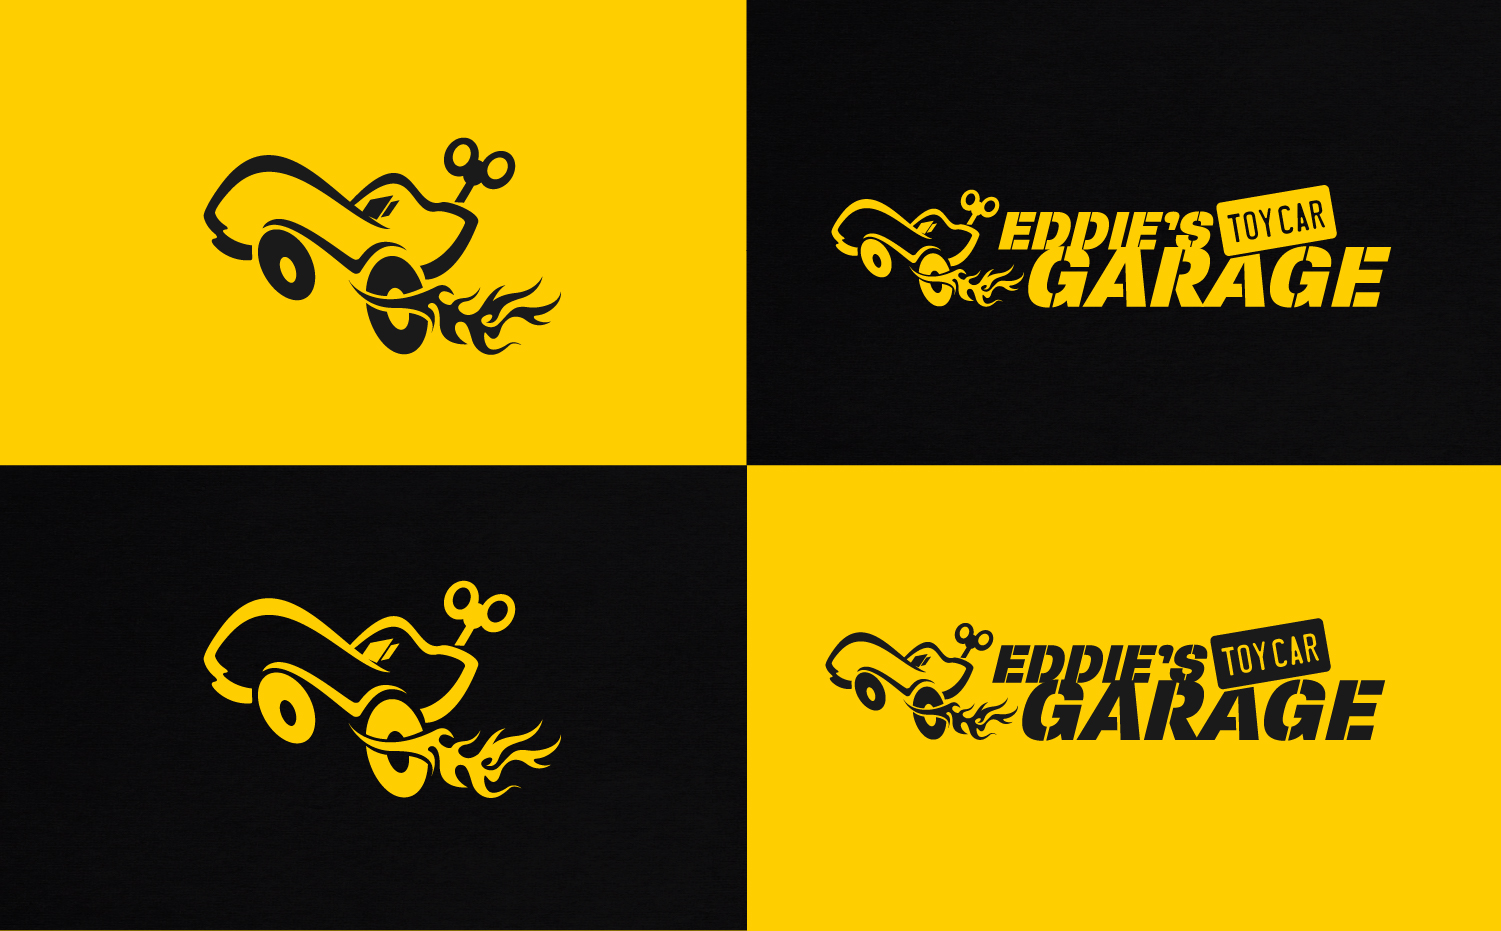 eddies-toy-car-garage-2